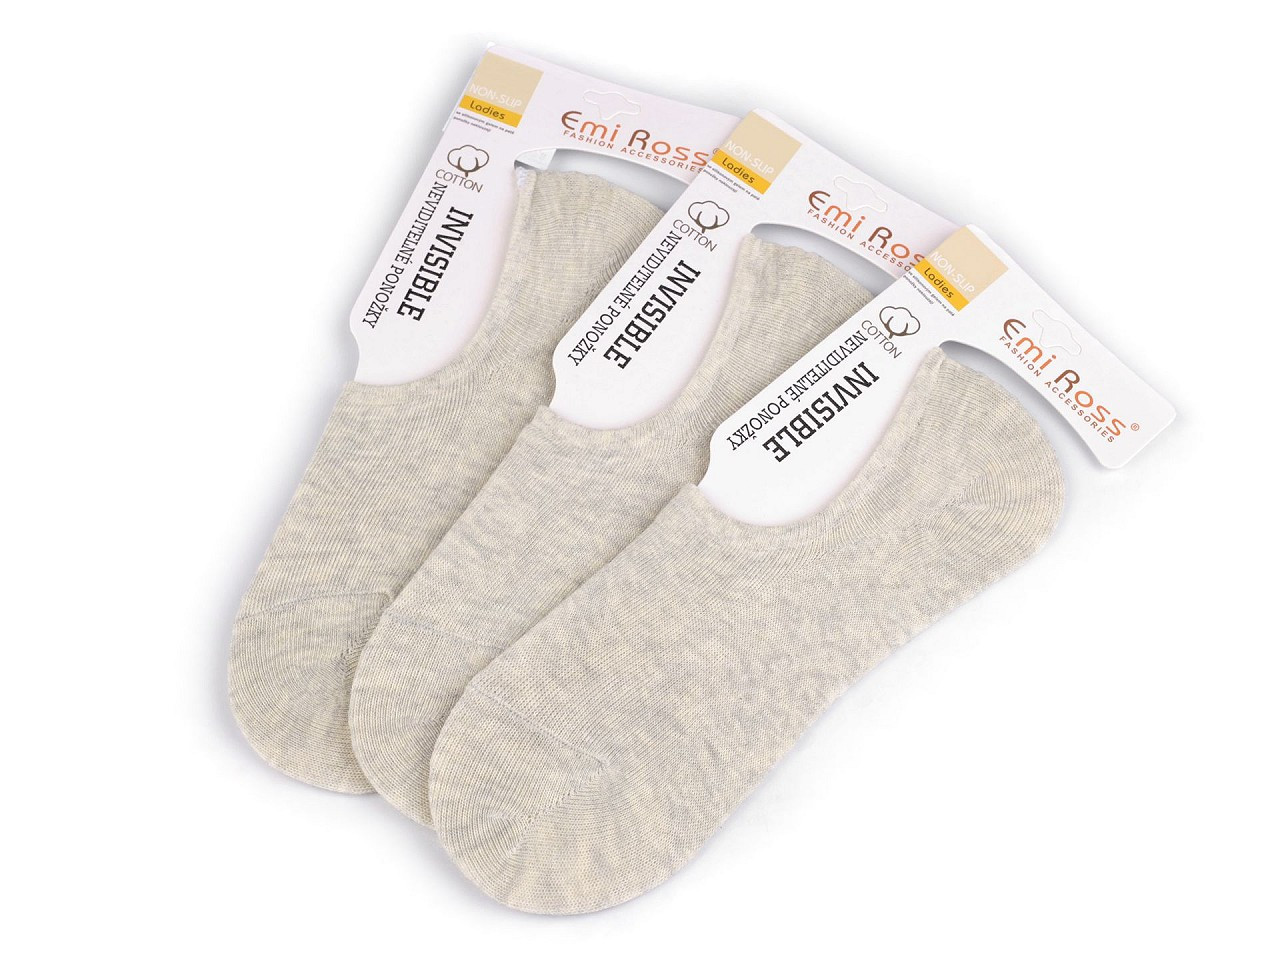 Dámské bavlněné ponožky do tenisek Emi Ross, barva 3 (vel. 35-38) šedá nejsvětlější